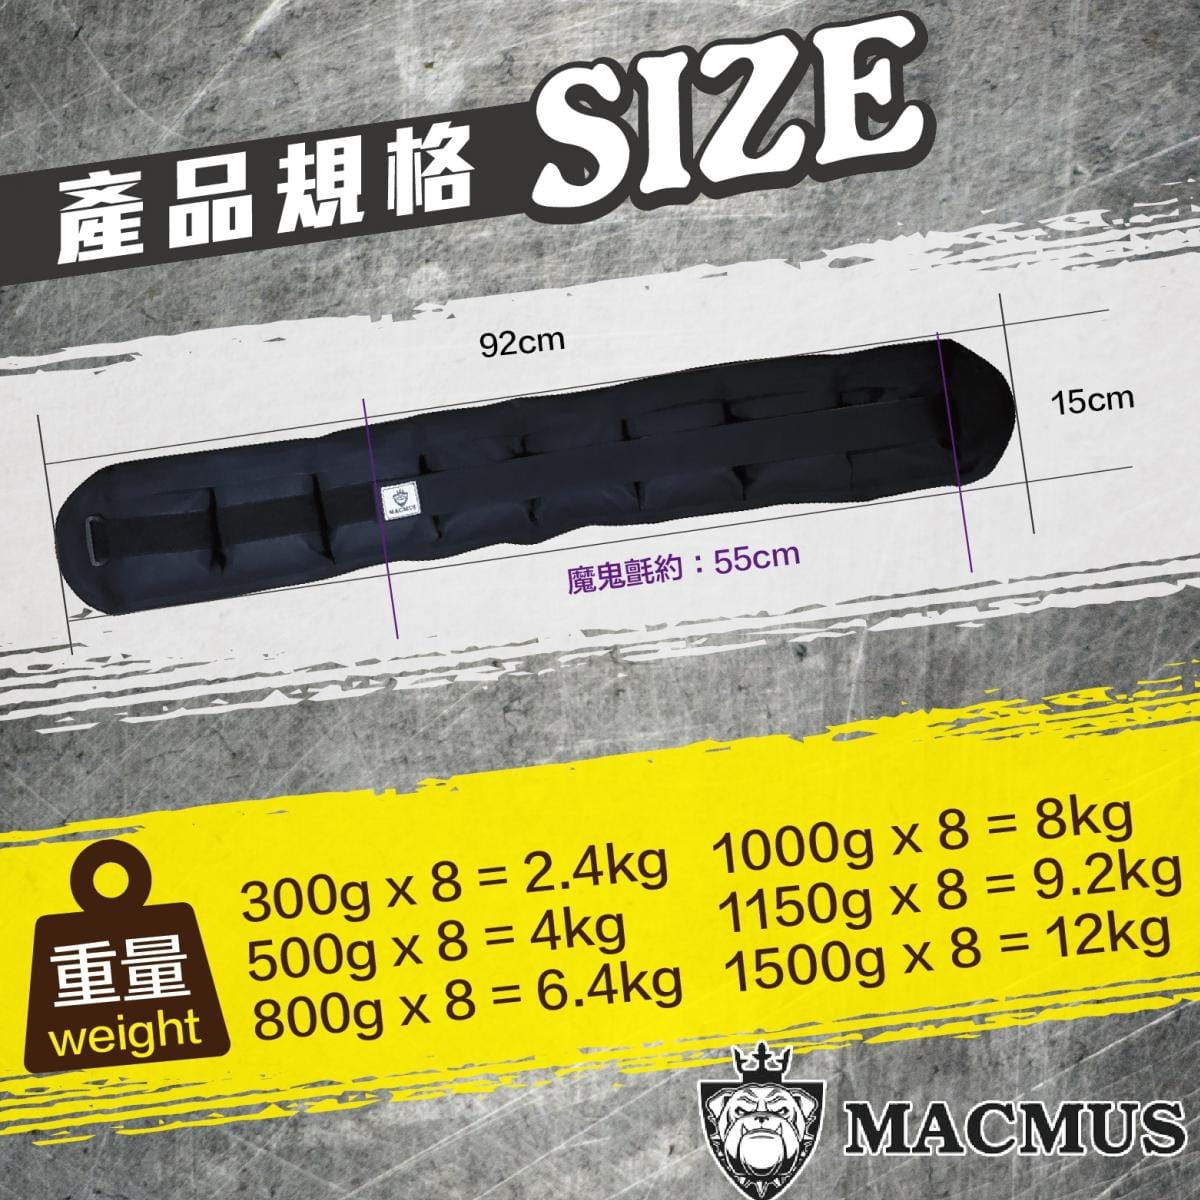 【MACMUS】6.4公斤負重腰帶｜8格式可調整重訓腰帶｜強化核心肌群鍛鍊腰部肌肉 1